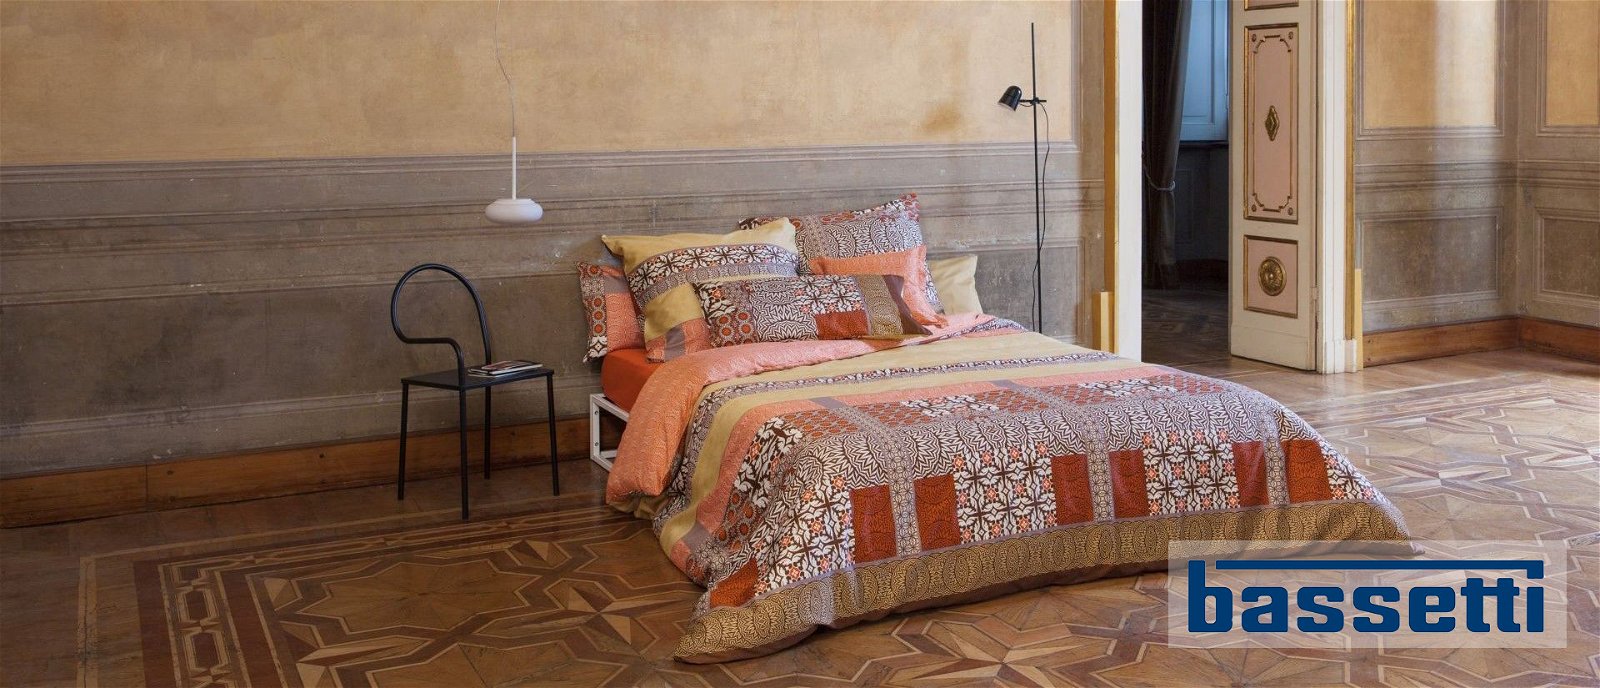 Bassetti Bettwäsche in verschiedenen Farben bei Wohn Schick und in unserem Online Shop